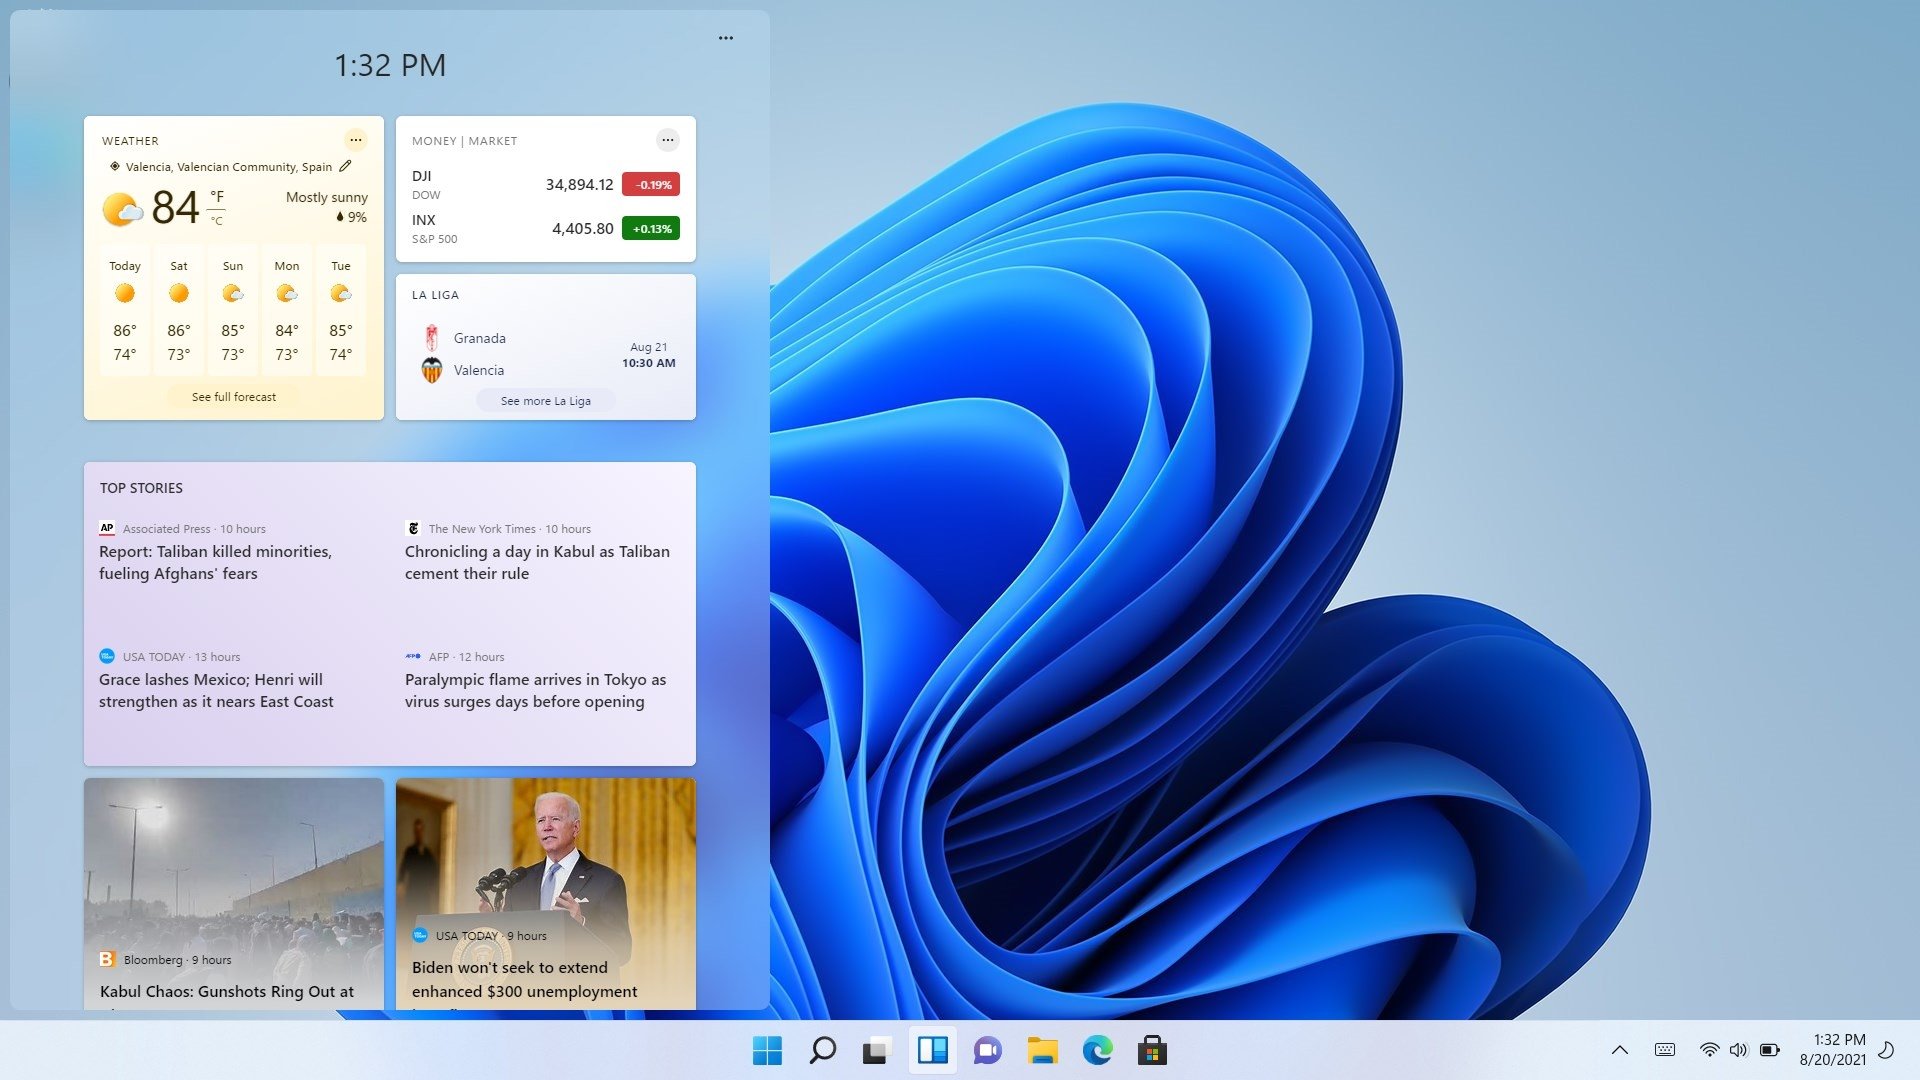 Windows 11: primeira prévia do sistema está disponível para download -  Olhar Digital